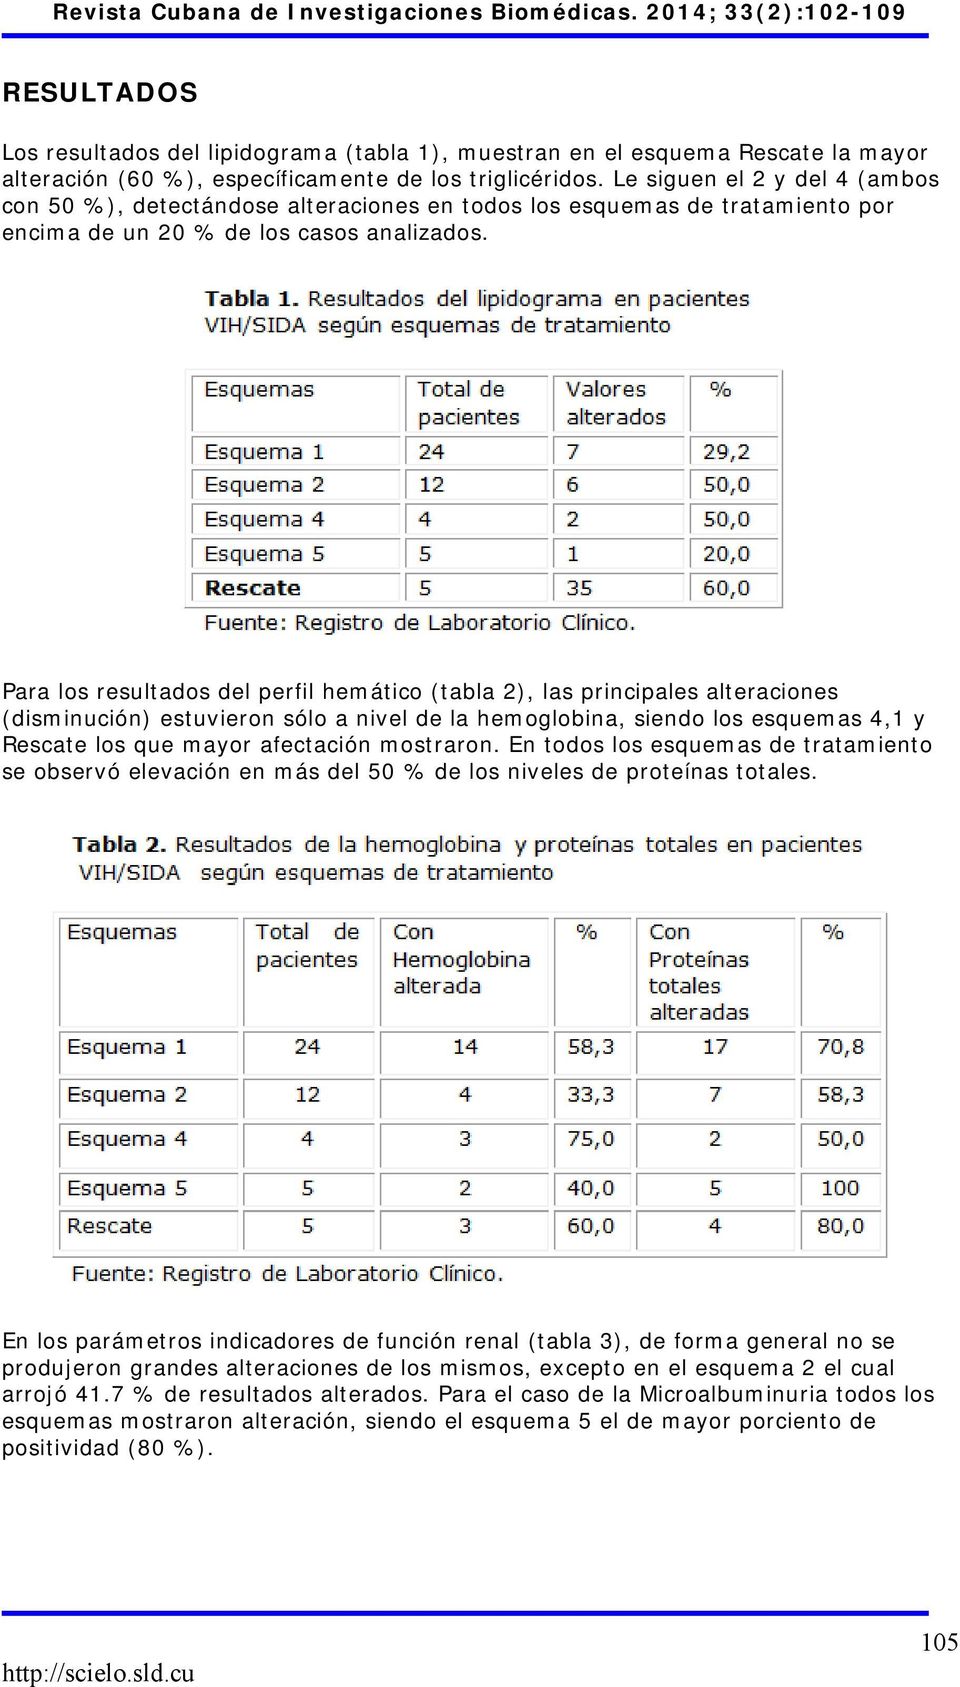 Para los resultados del perfil hemático (tabla 2), las principales alteraciones (disminución) estuvieron sólo a nivel de la hemoglobina, siendo los esquemas 4,1 y Rescate los que mayor afectación